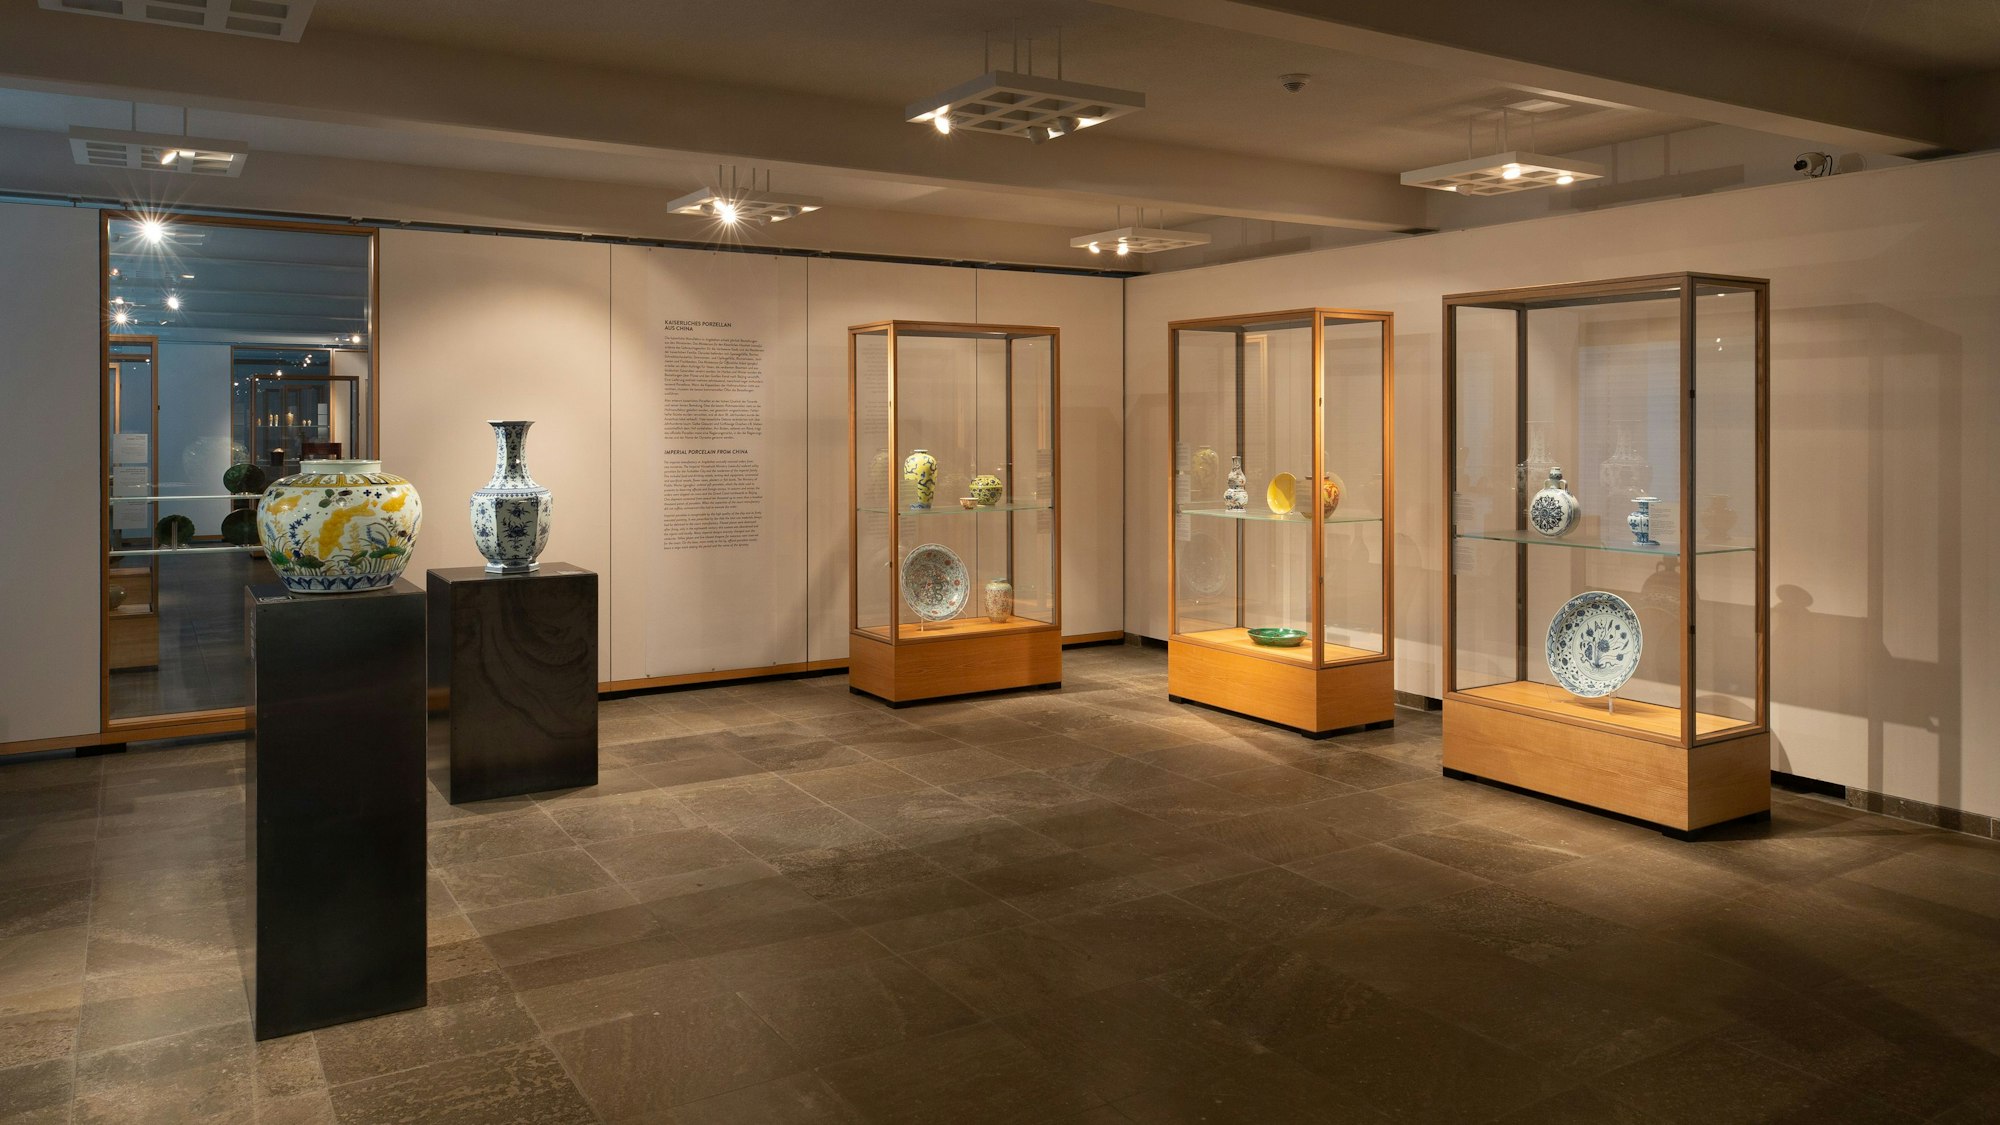 Blick in den Ausstellungsraum, aus dem die Täter die Porzellan-Objekte aus den Vitrinen gestohlen haben.